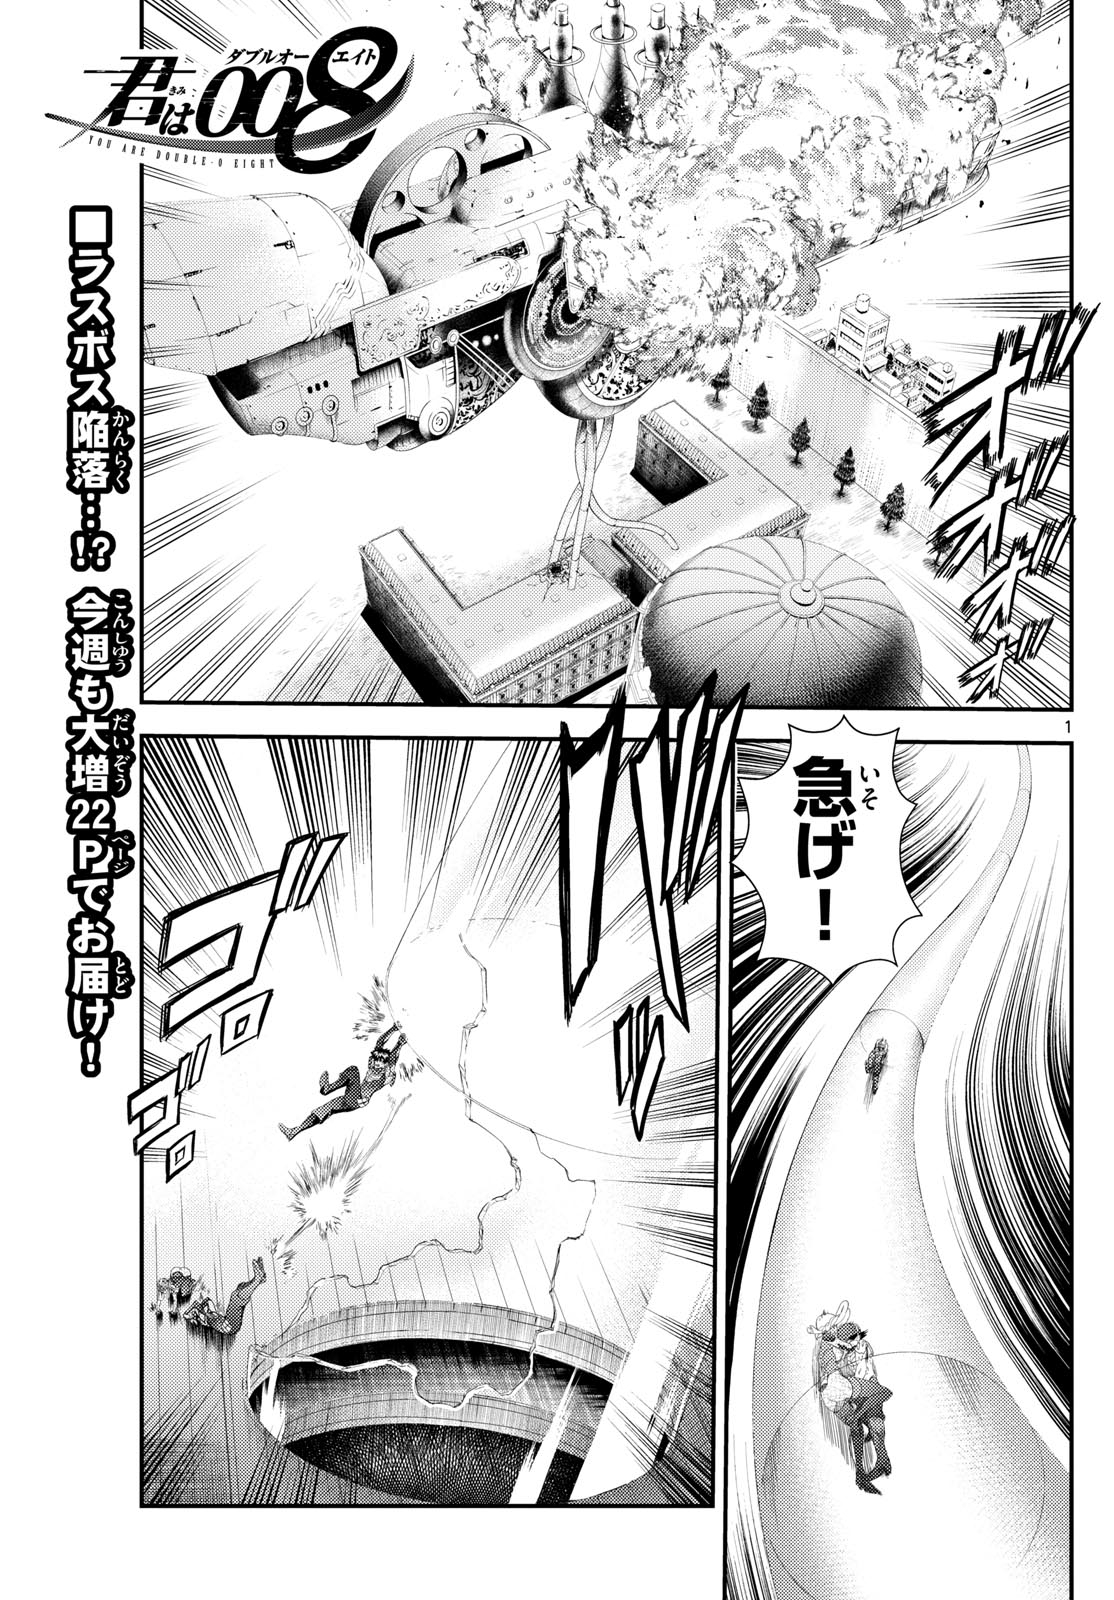 Kimi wa 008 - Chapter 286 - Page 1